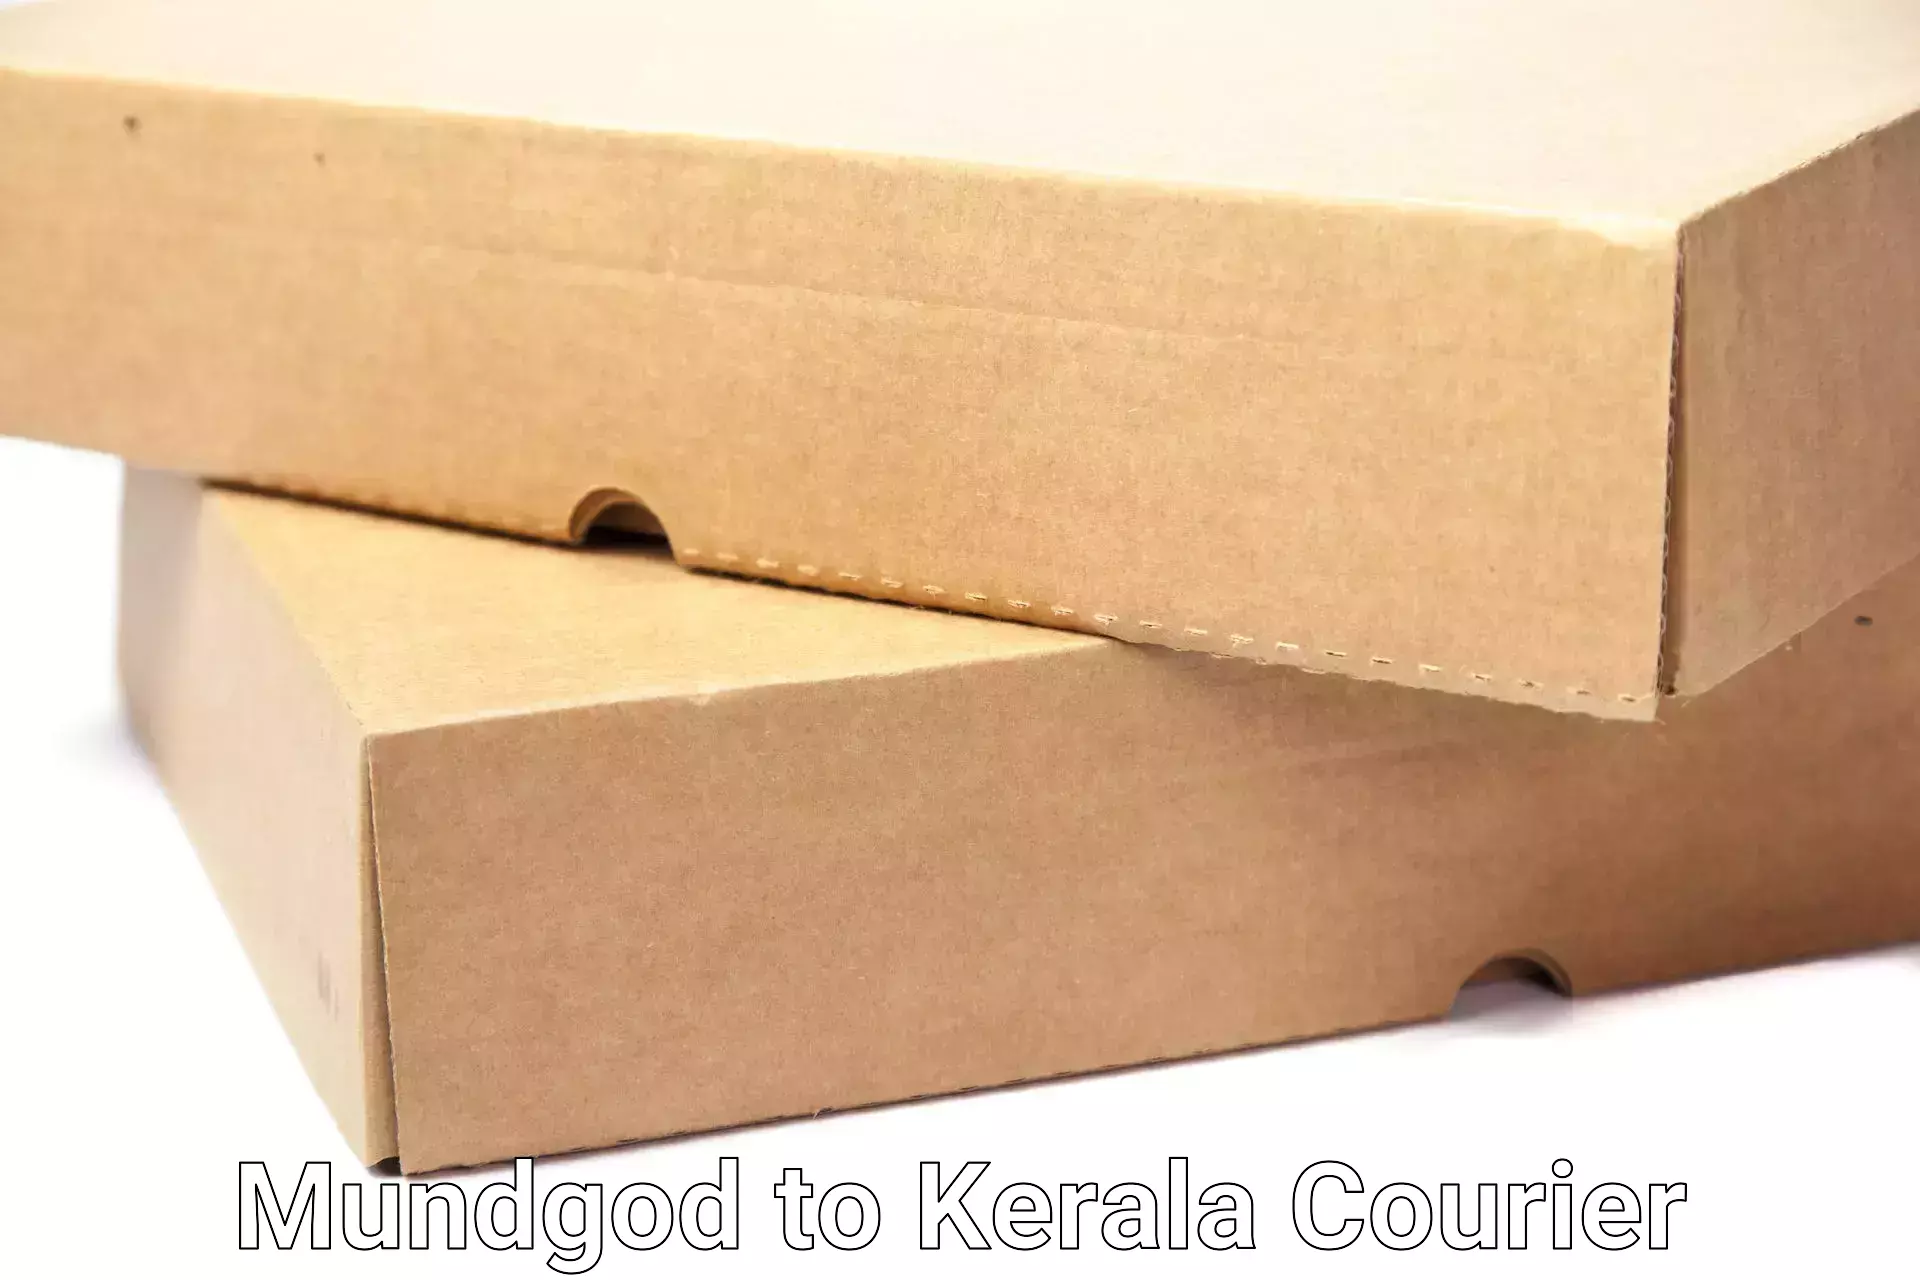 Customized moving experience Mundgod to Kerala